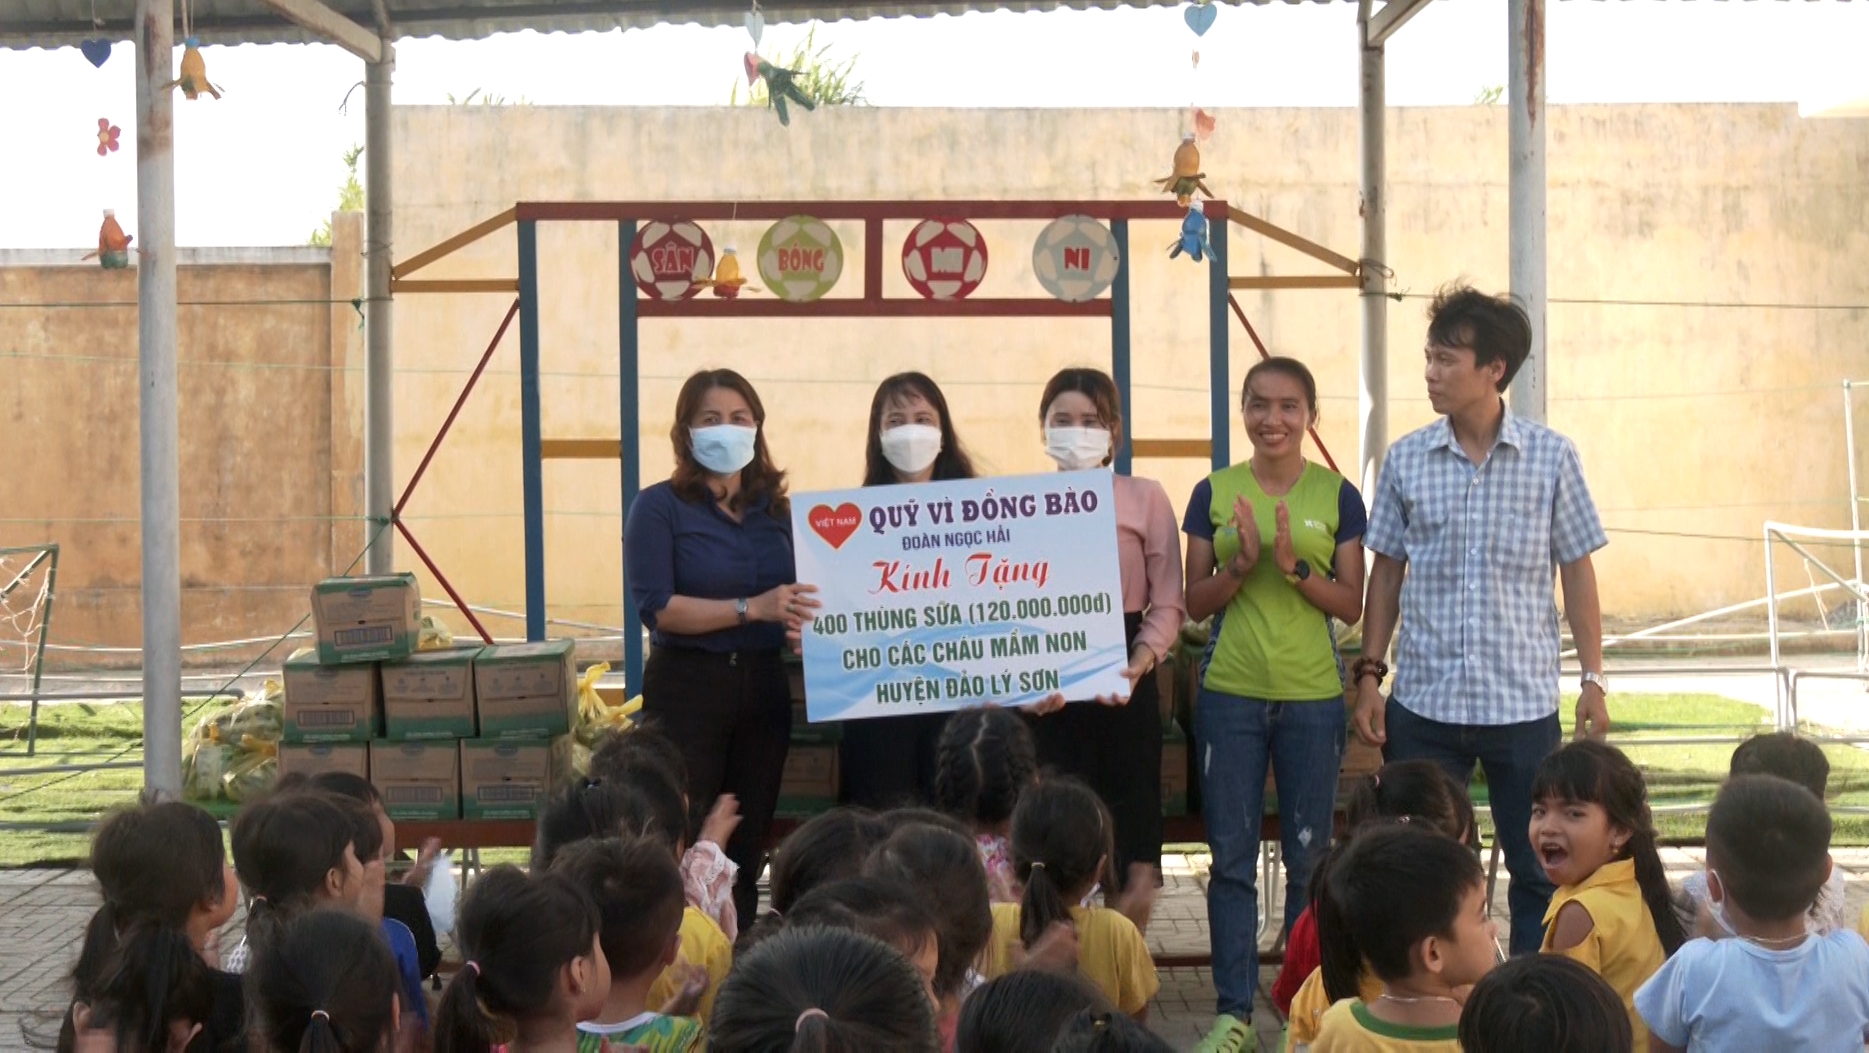 “Quỹ vì đồng bào” ông Đoàn Ngọc Hải tặng 400 thùng sữa cho học sinh Lý Sơn